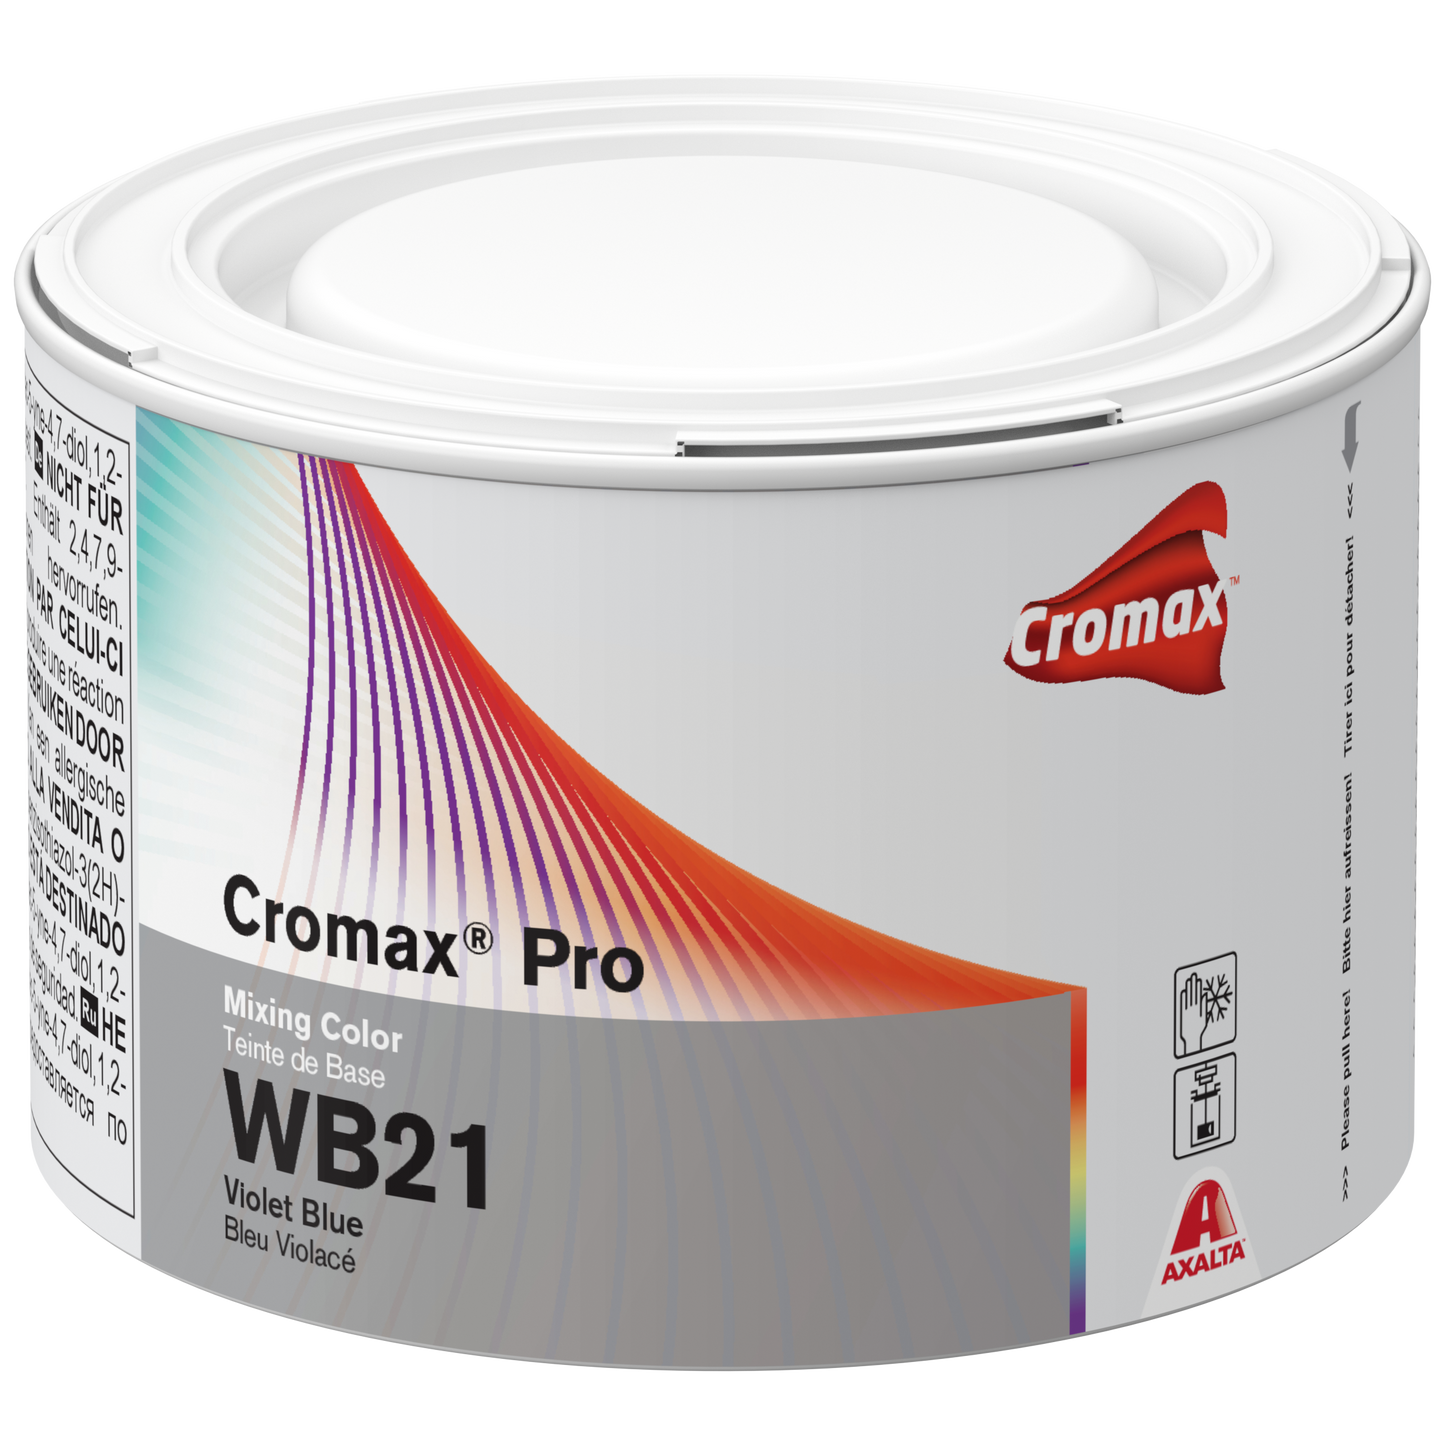 Cromax Pro Mixing Color Violet Blue - 0.5 lit